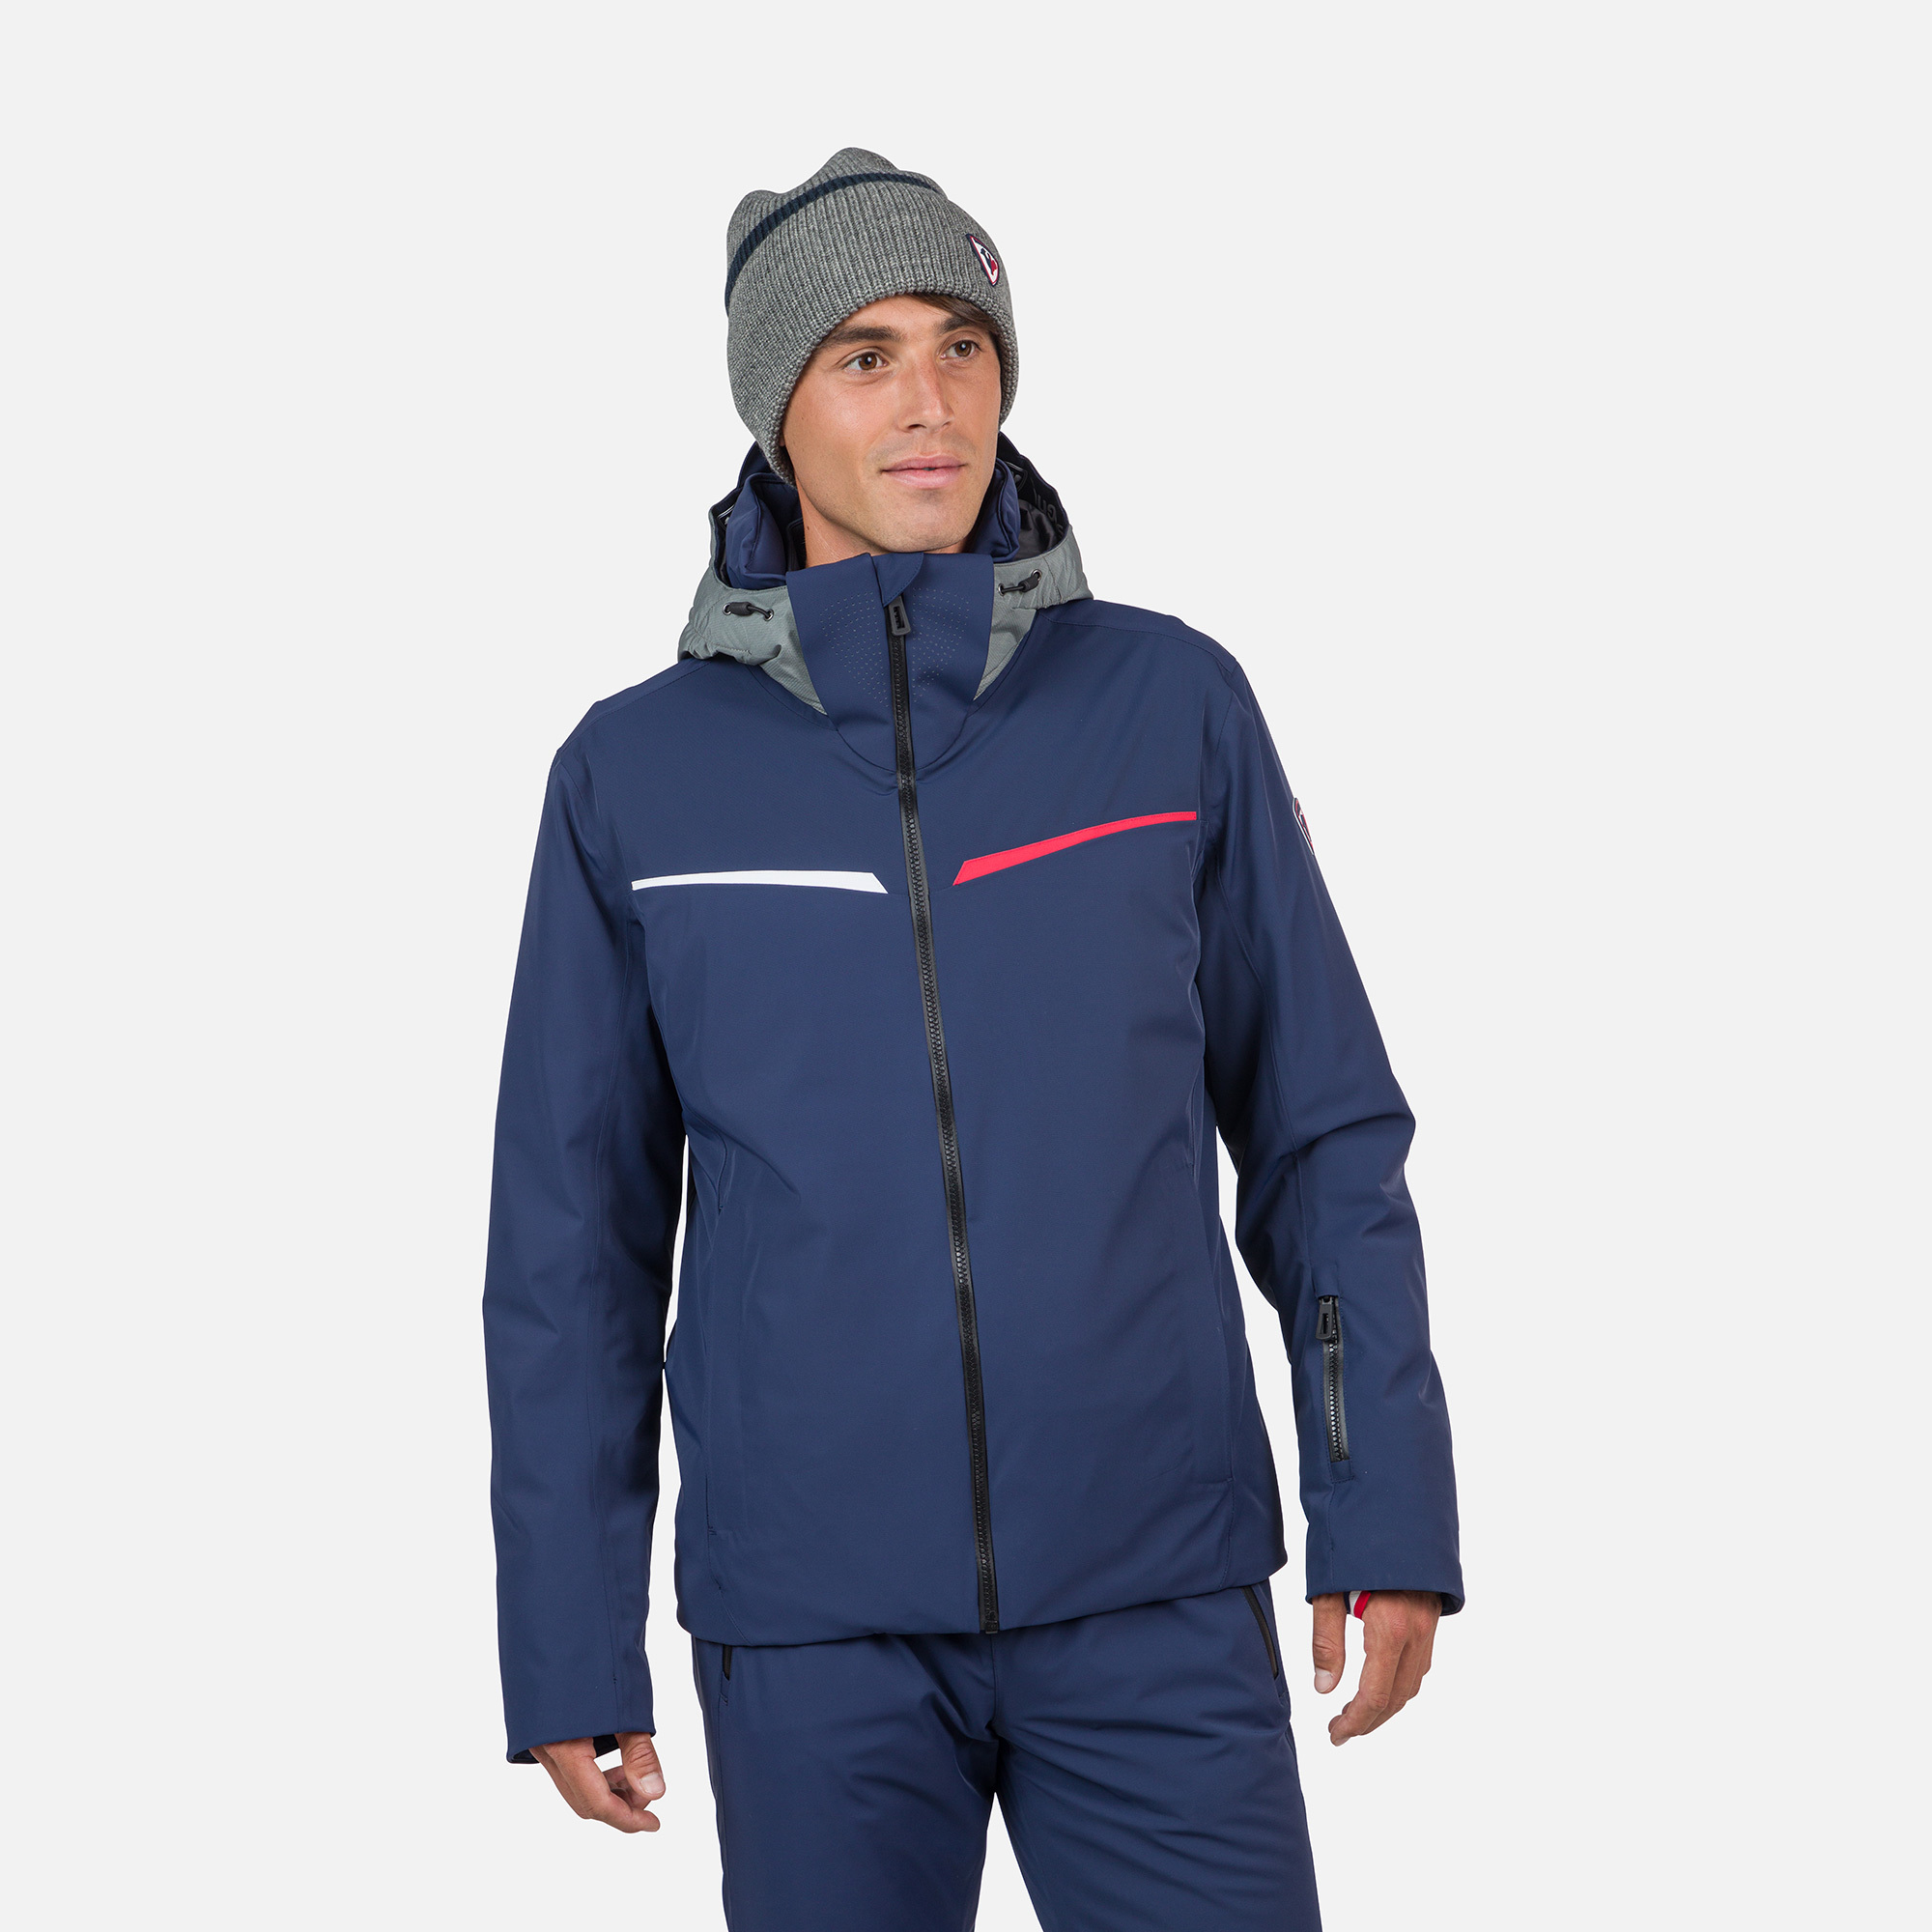 Men's Strato STR Ski Jacket